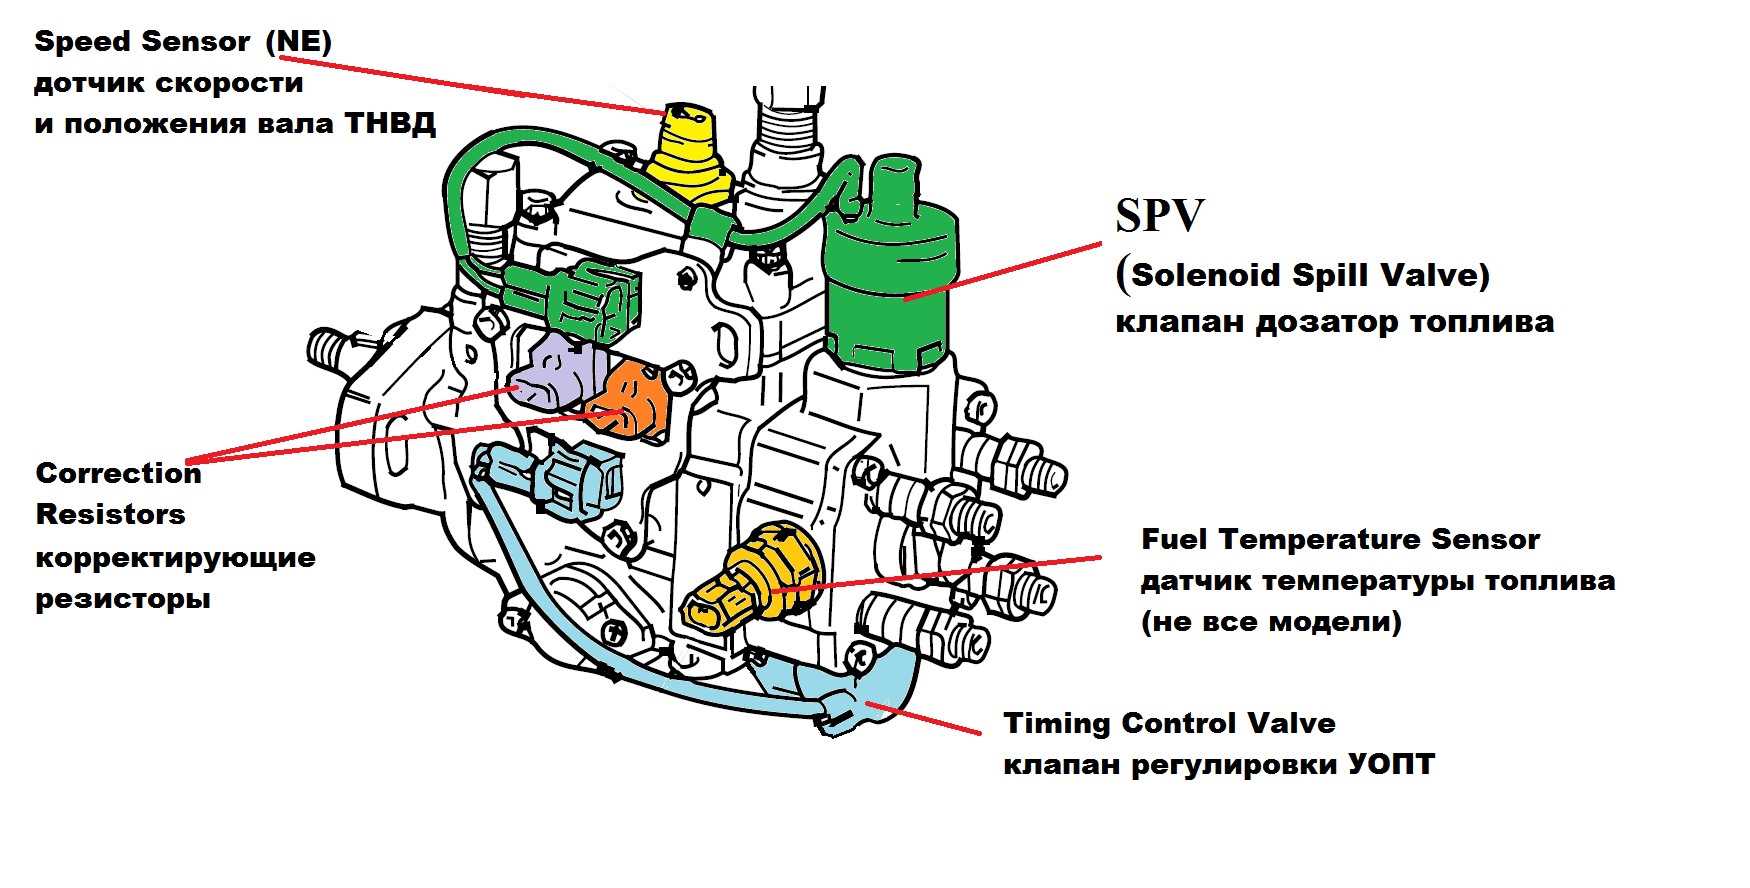 Технология сборки и регулировки топливного насоса высокого давления (тнвд) дизельного двигателя